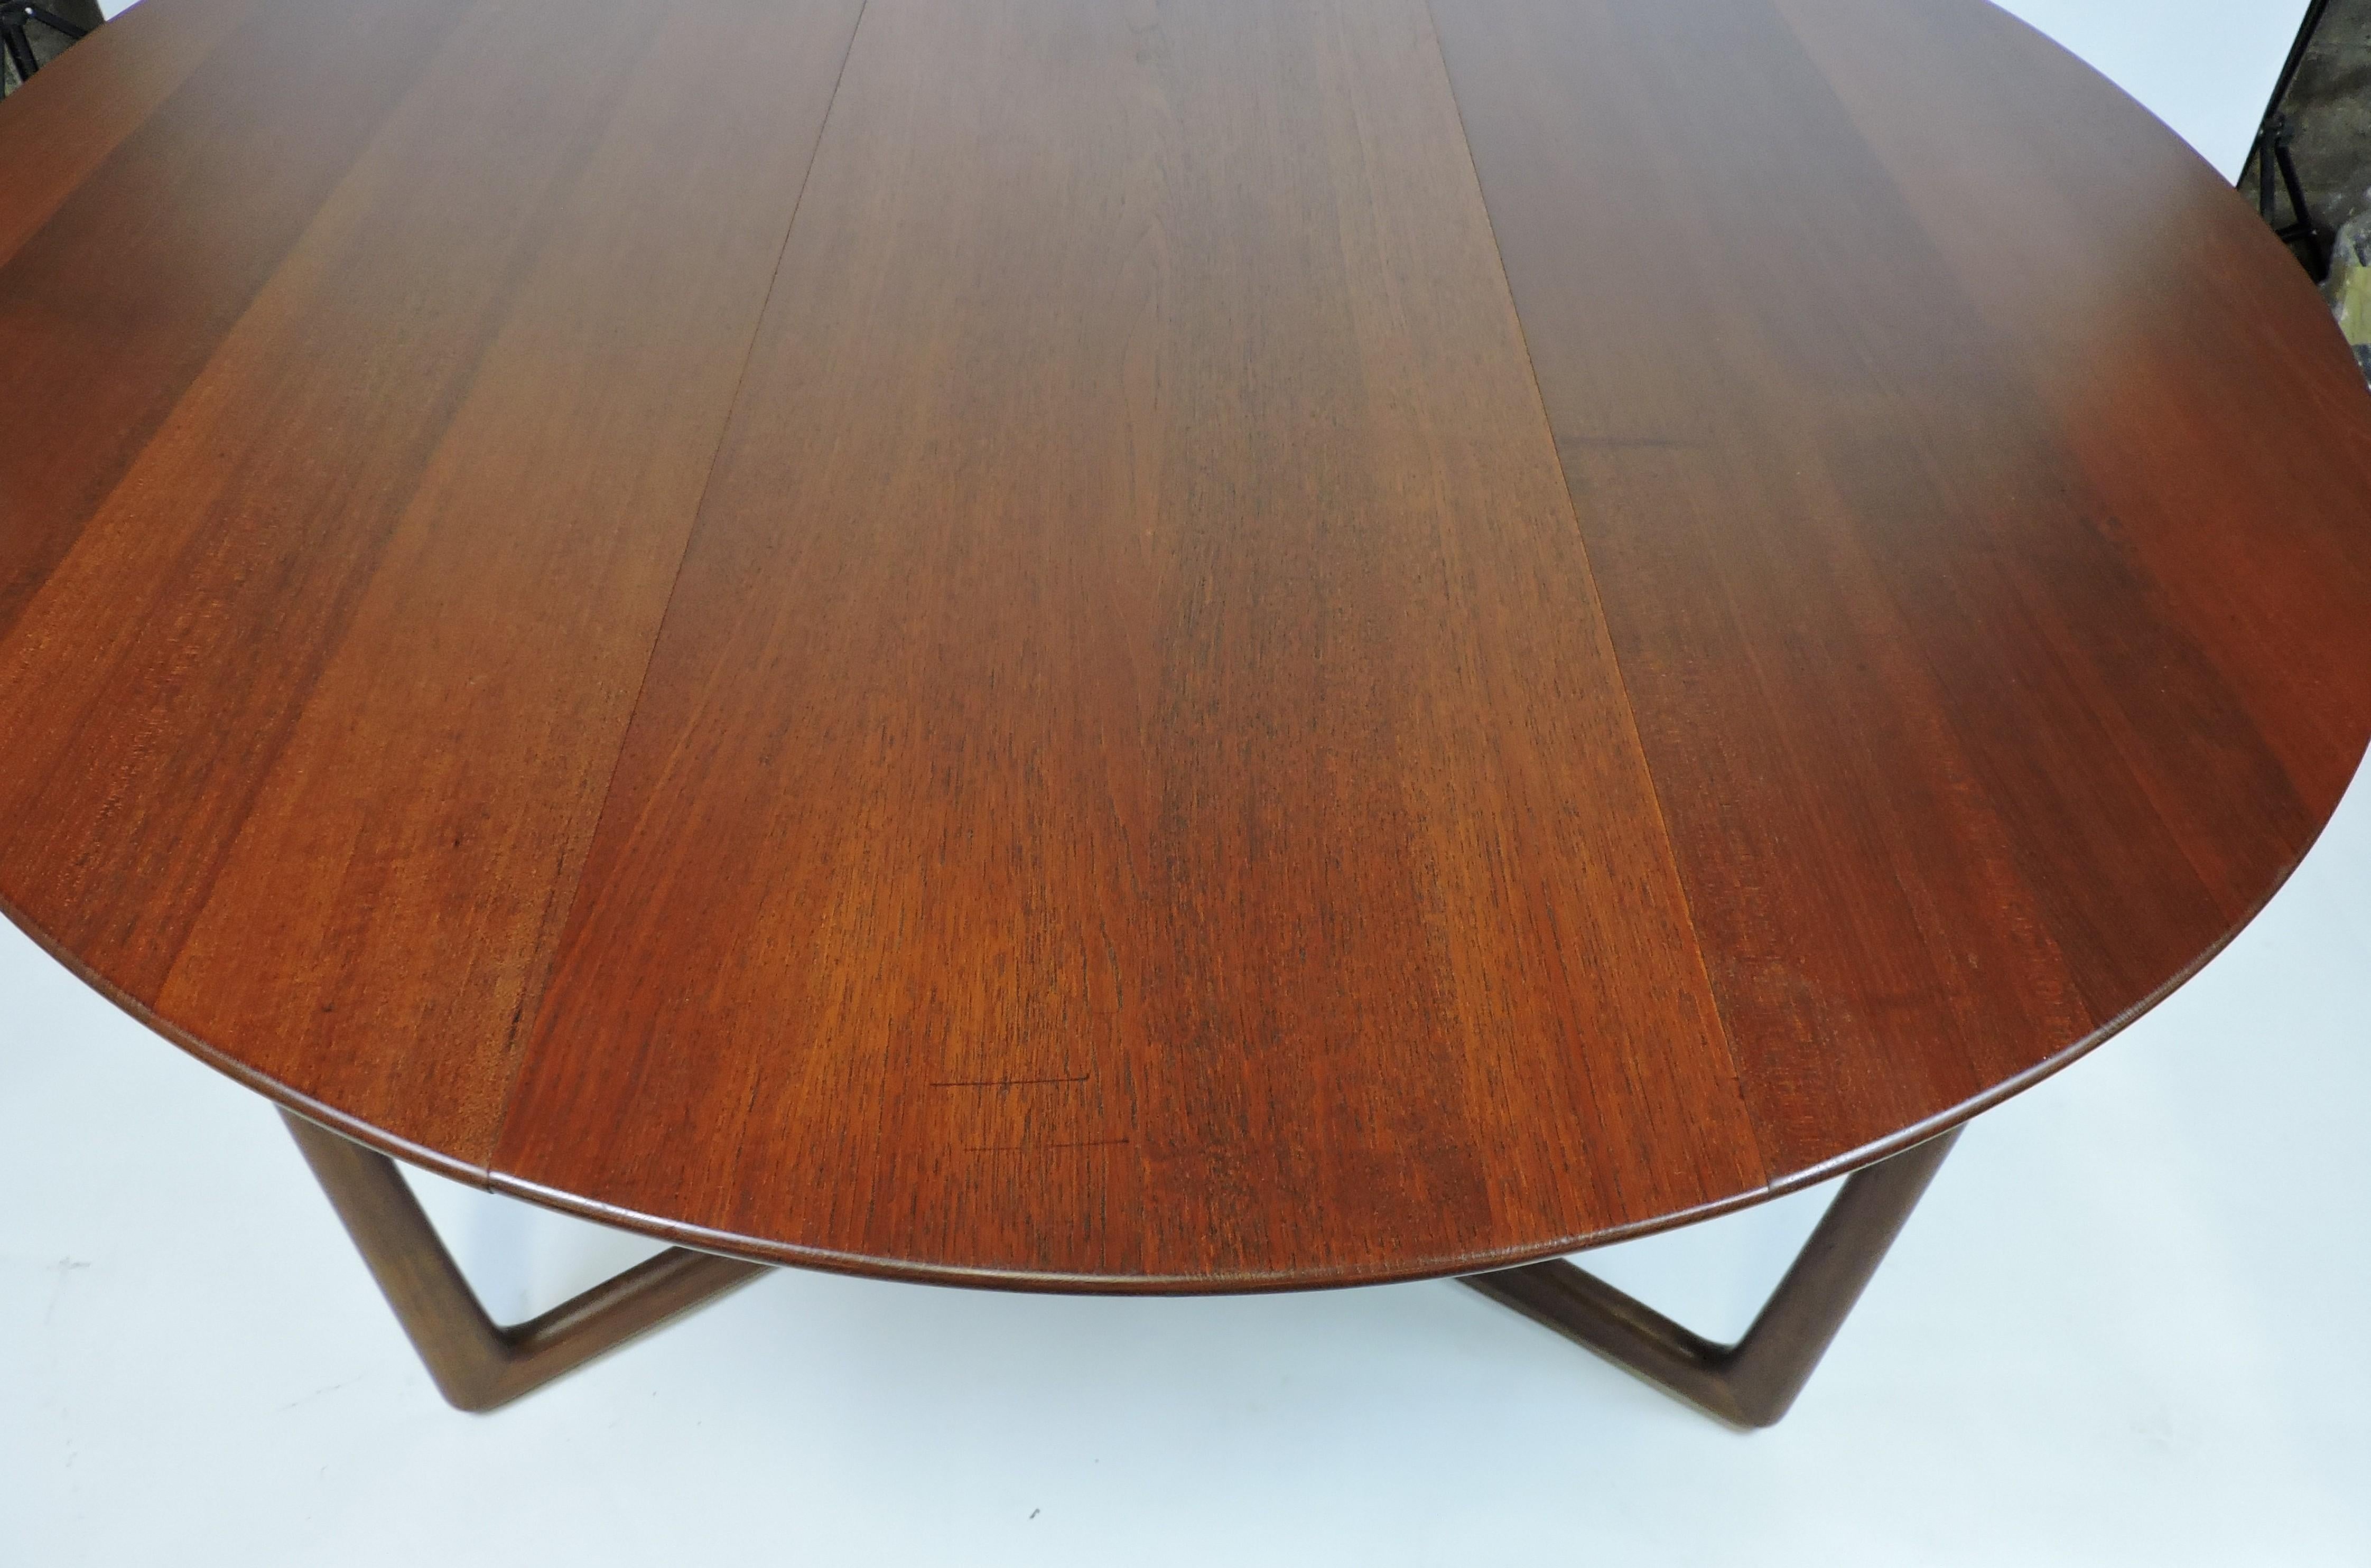 Hvidt Nielsen Danish Modern Solid Teak Drop-Leaf Gateleg Dining Table #20/59 6